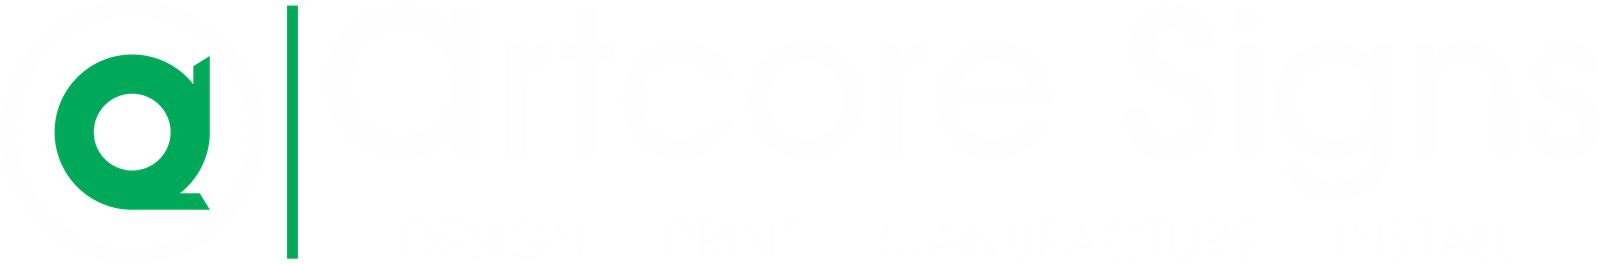 Artcore signs logo